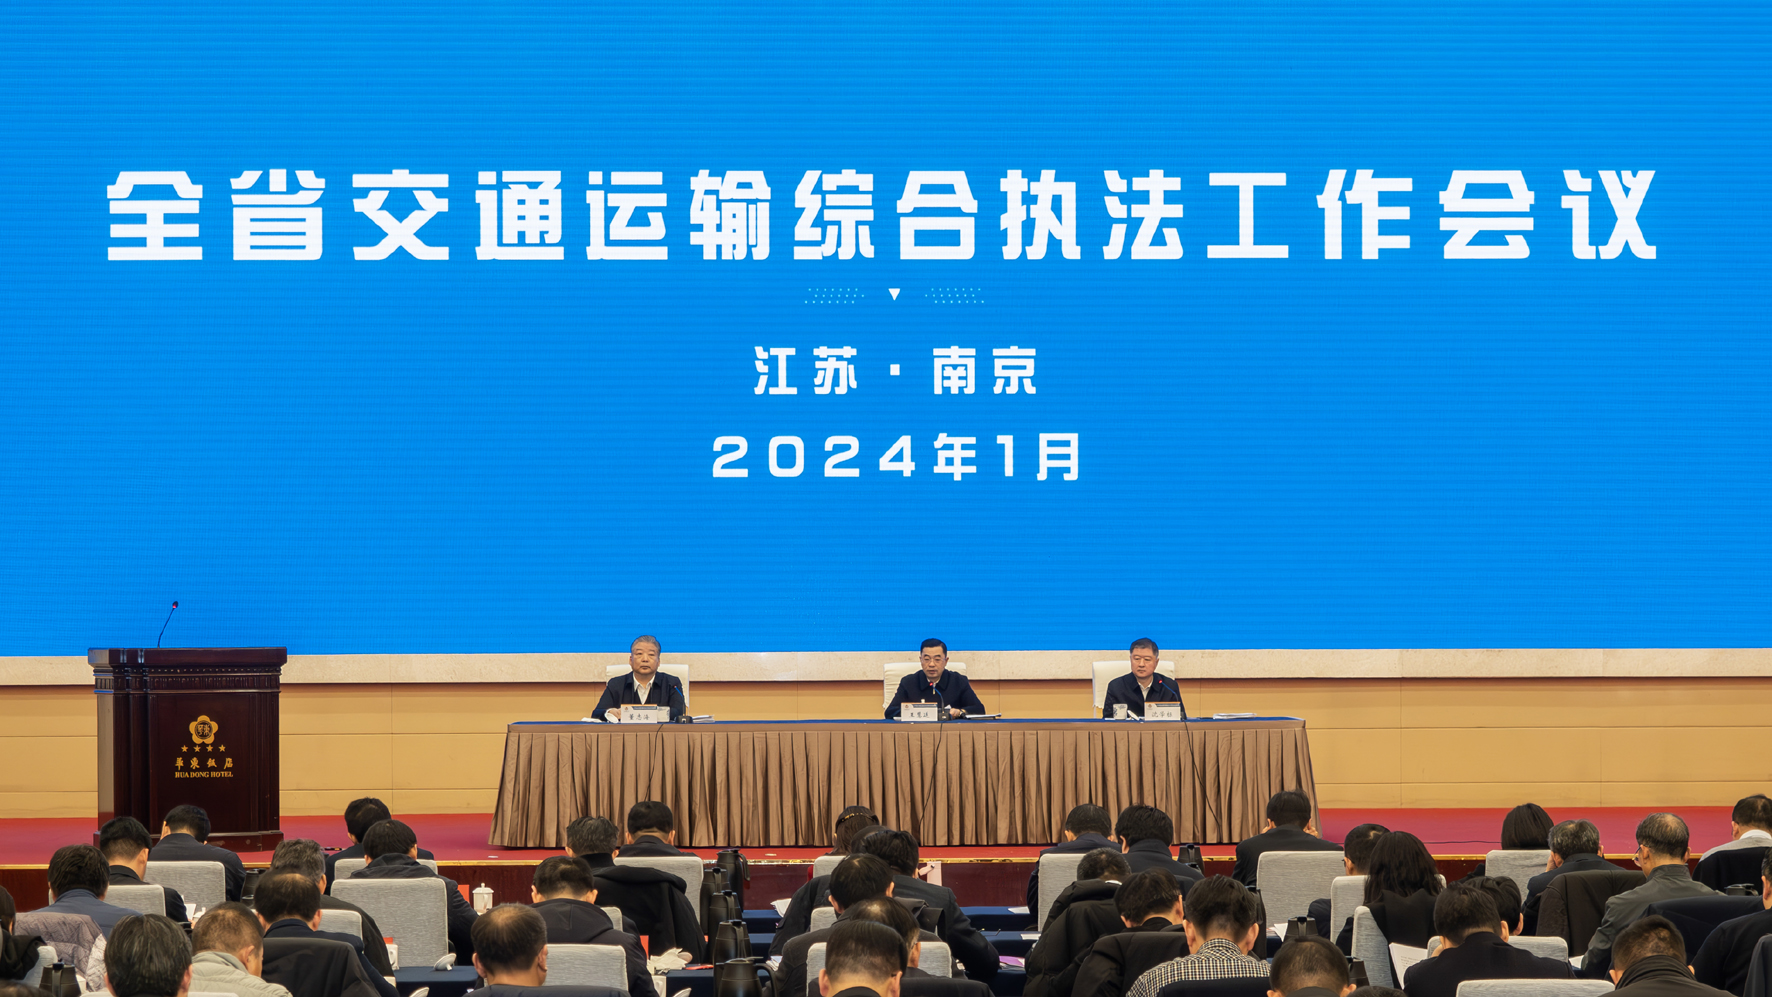 立足新起点 争做新示范 2024年江苏交通运输综合执法工作会议召开